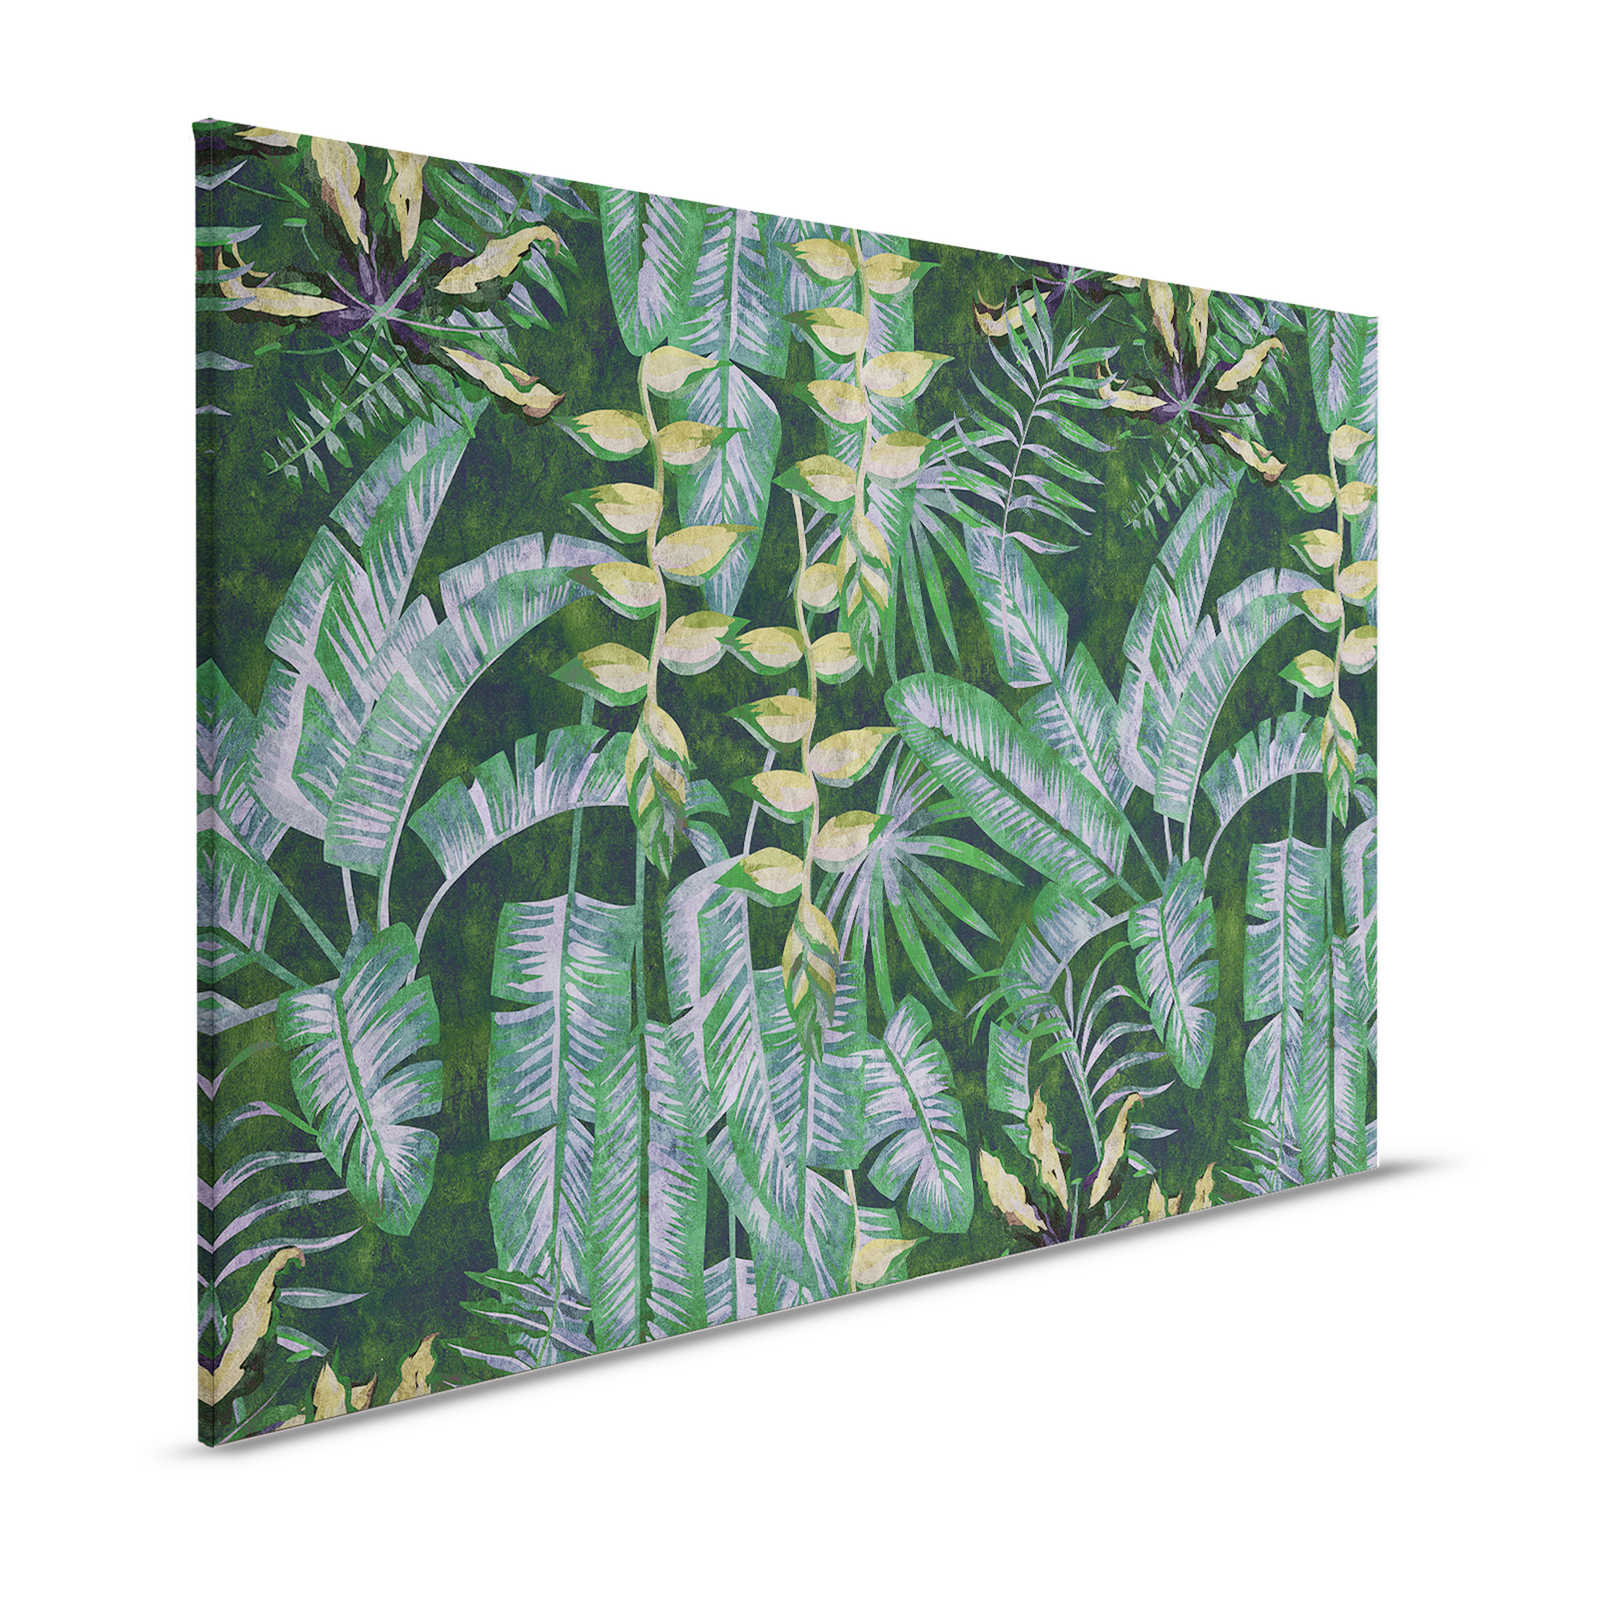 Tropicana 2 - Cuadro en lienzo con plantas tropicales - 1,20 m x 0,80 m
